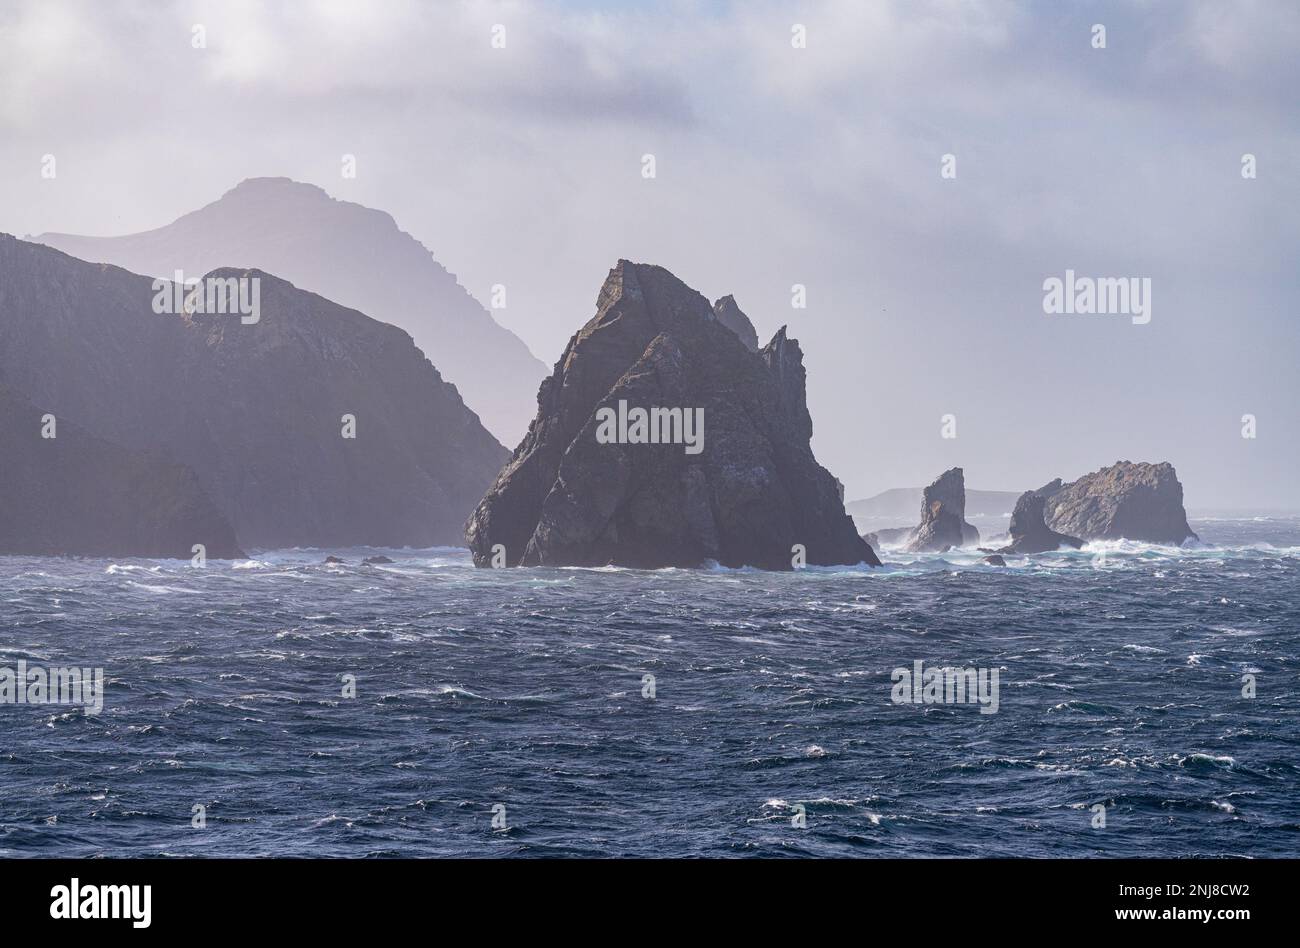 Escarpages rocheuses déchiquetées au large de l'île Hornos, près de Cape Horn au Chili Banque D'Images